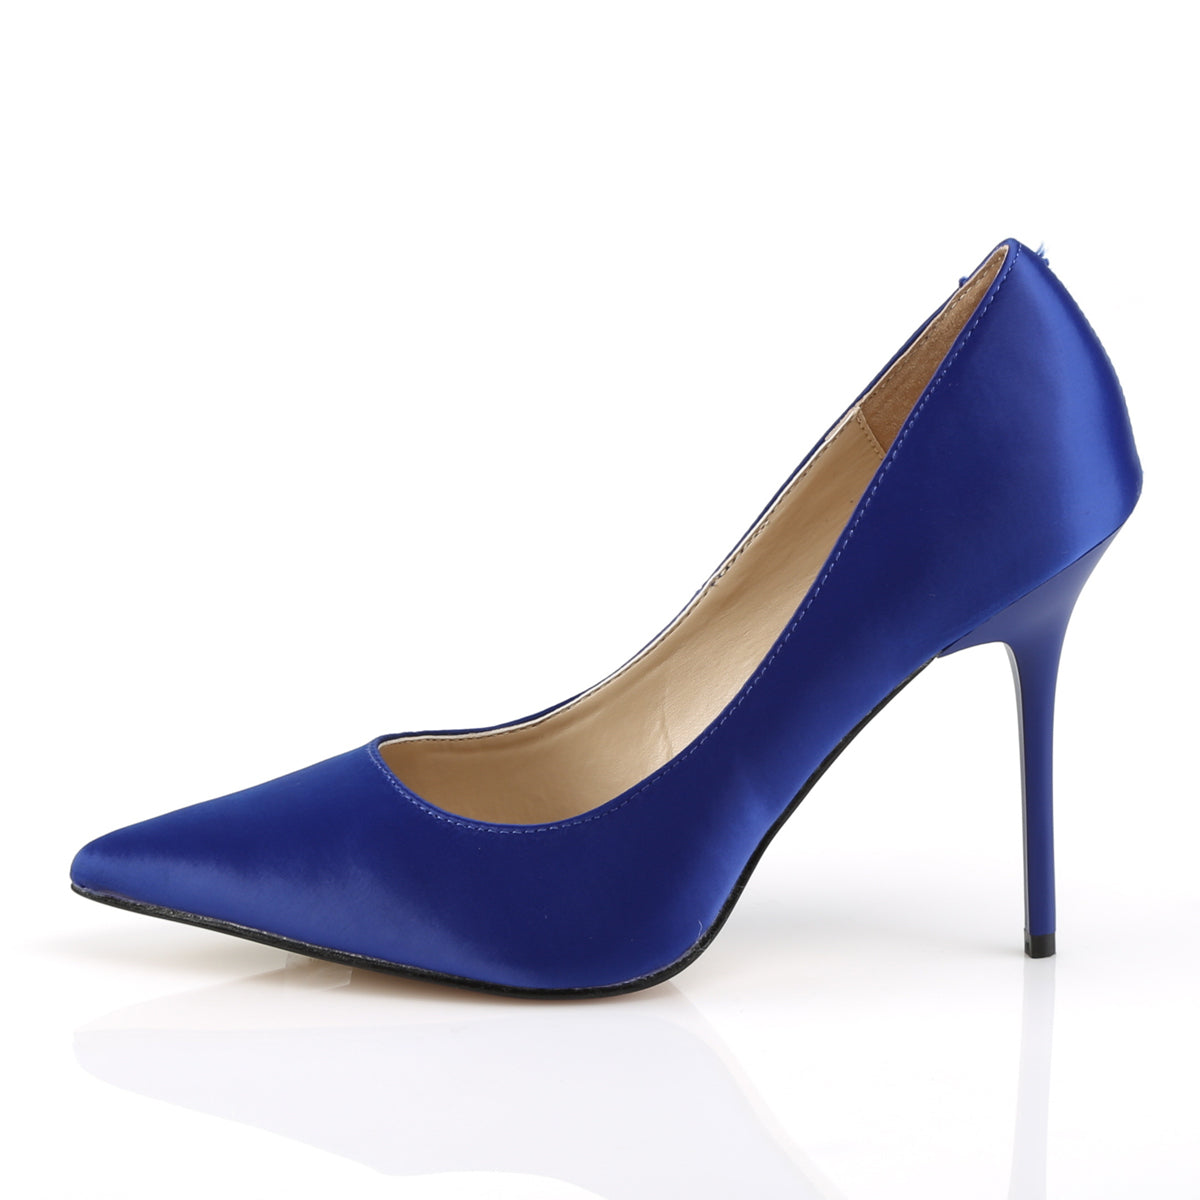 DISCONTINUED PLEASER Classique-20 Blue Satin Work Pumps Heels Large Plus Sz 5-16 - A Shoe Addiction Australia